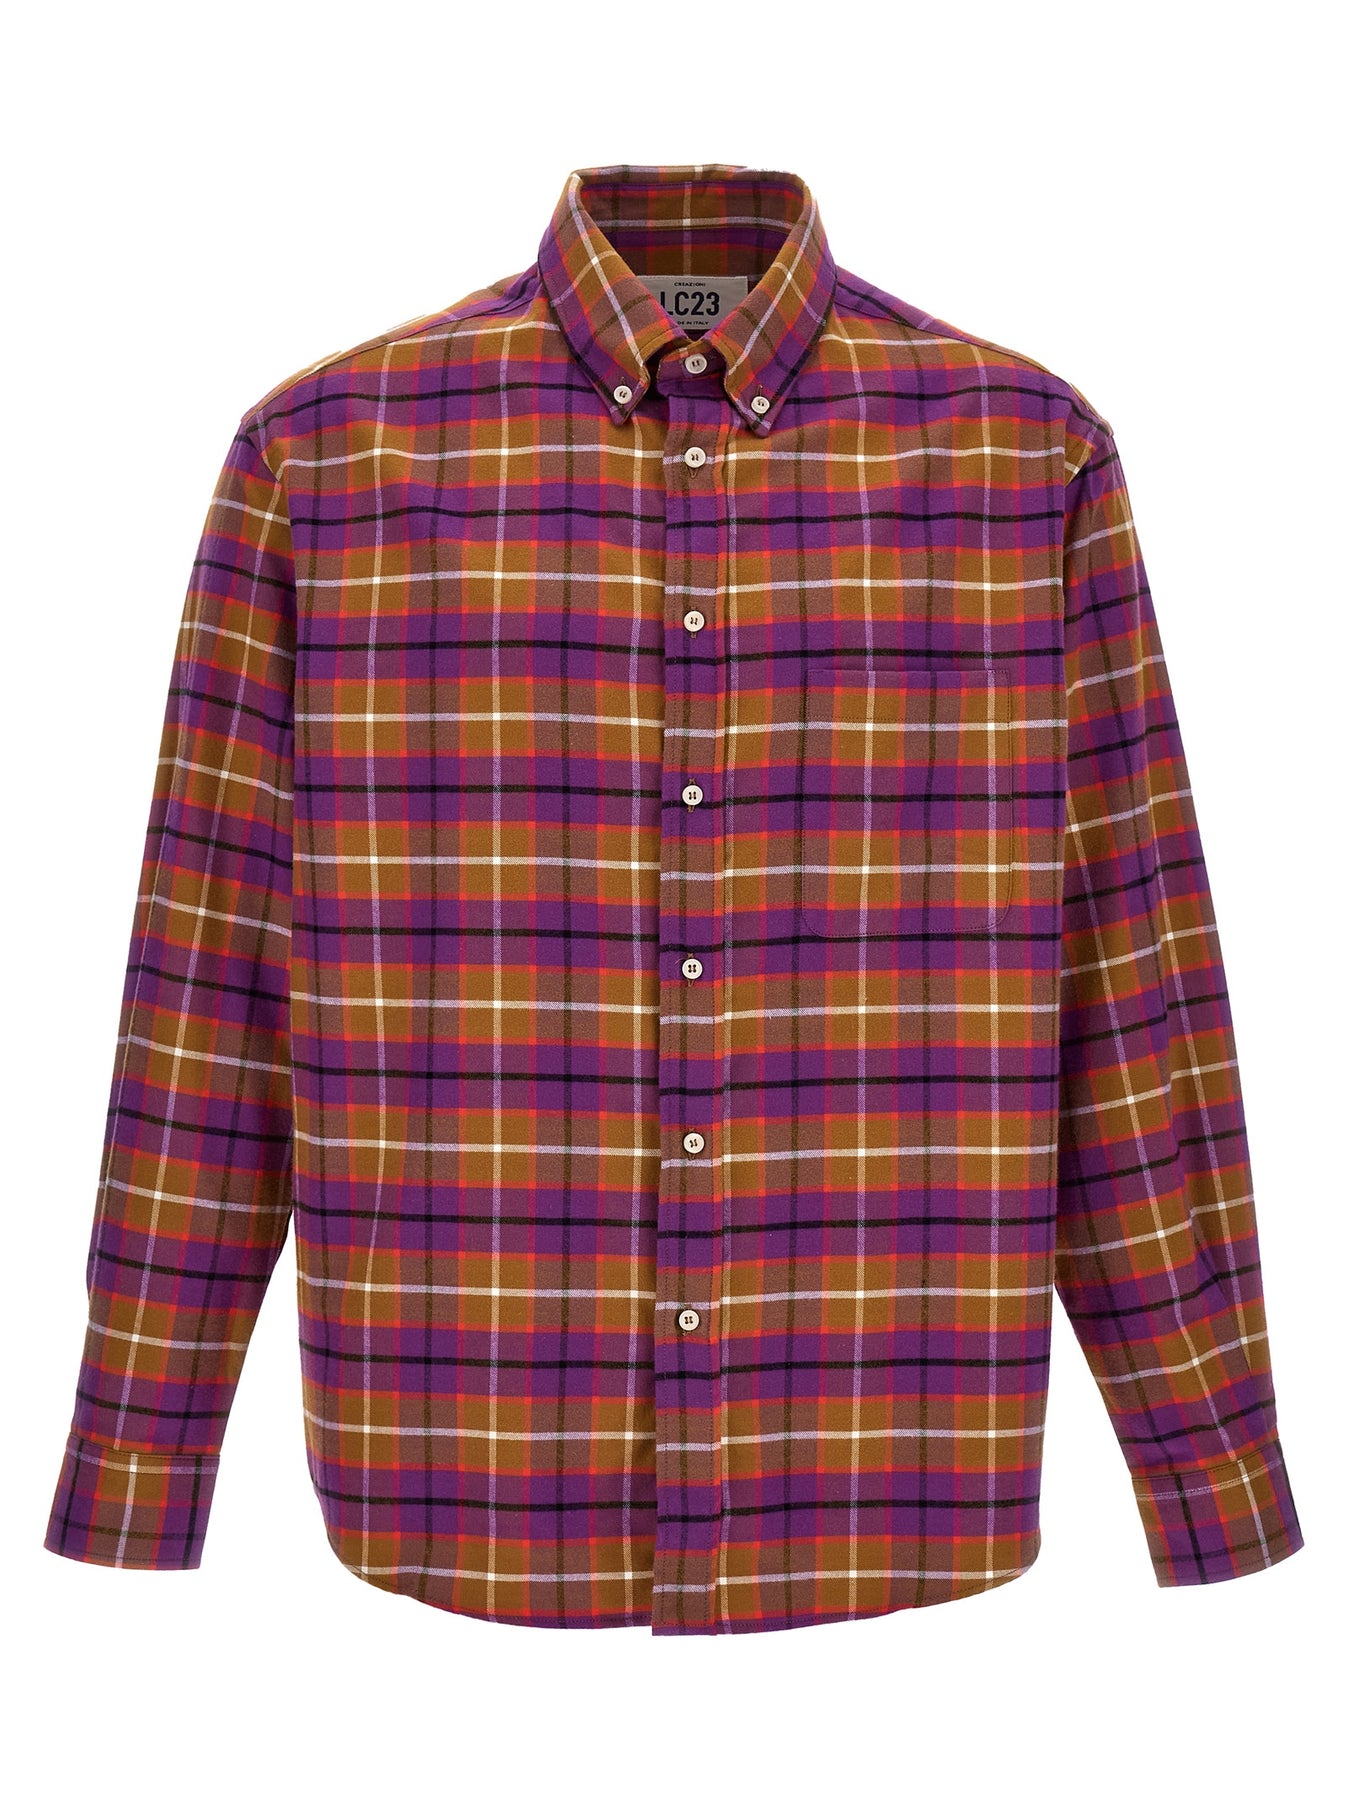 Shop Lc23 Check Flannel Shirt, Blouse